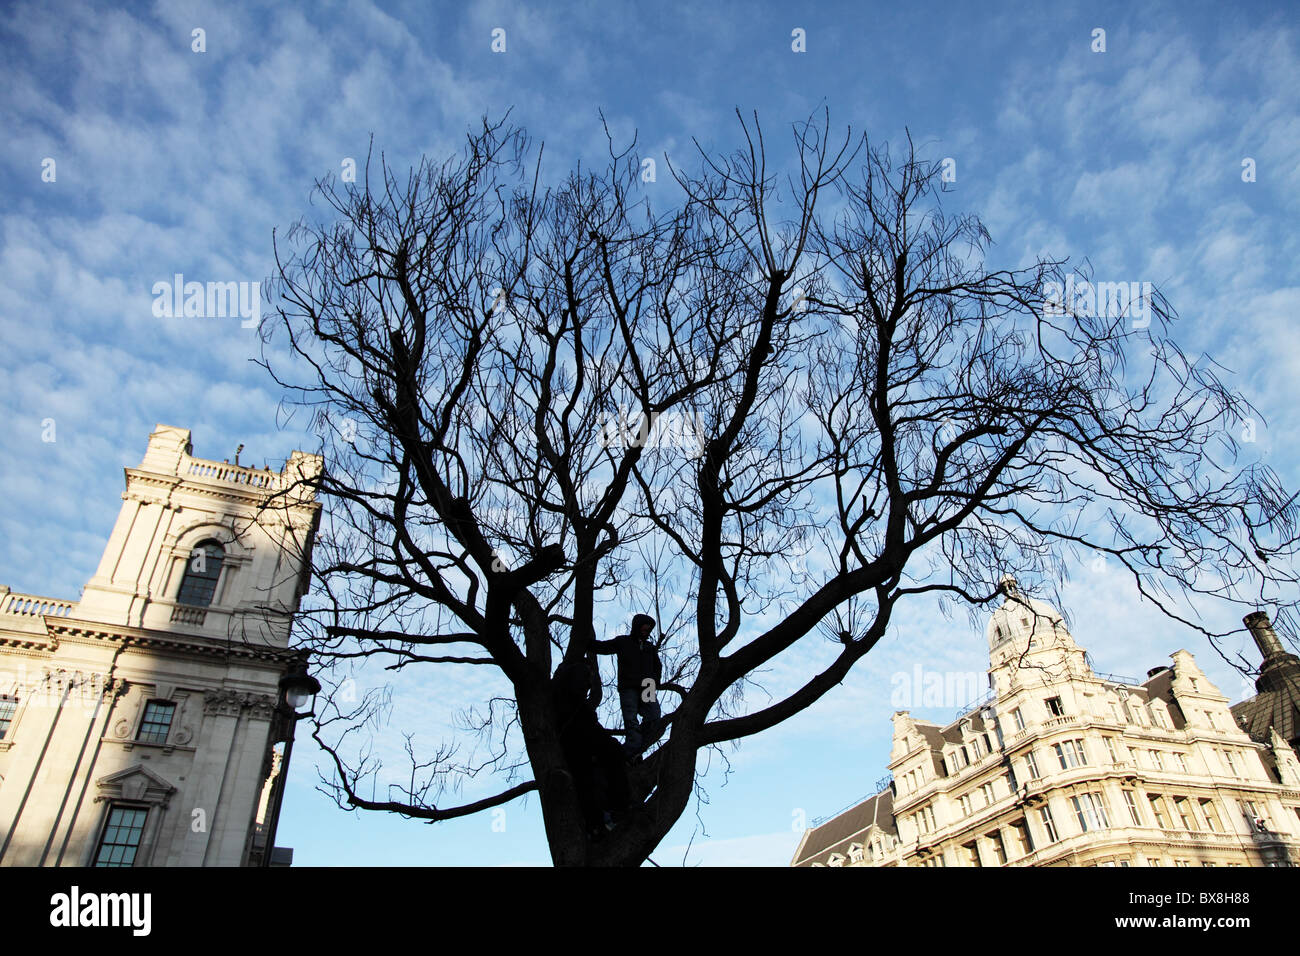 Un étudiant dans un arbre pendant la manifestation. Manifestation étudiante. La place du Parlement. Westminister. Londres Banque D'Images